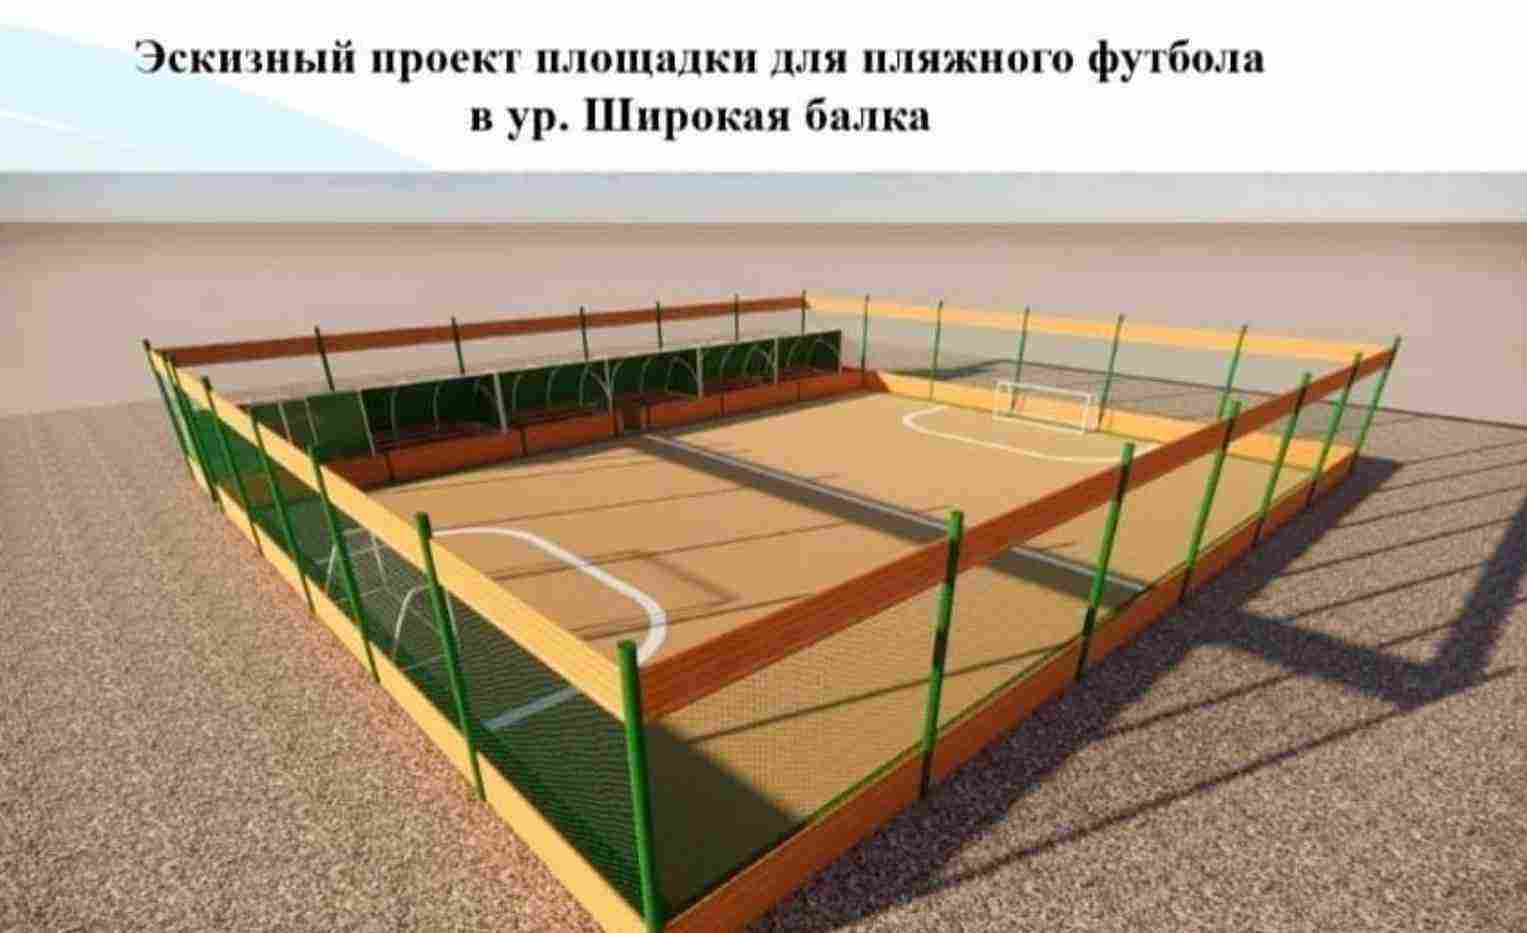 В Новороссийске скоро появится площадка для пляжного футбола